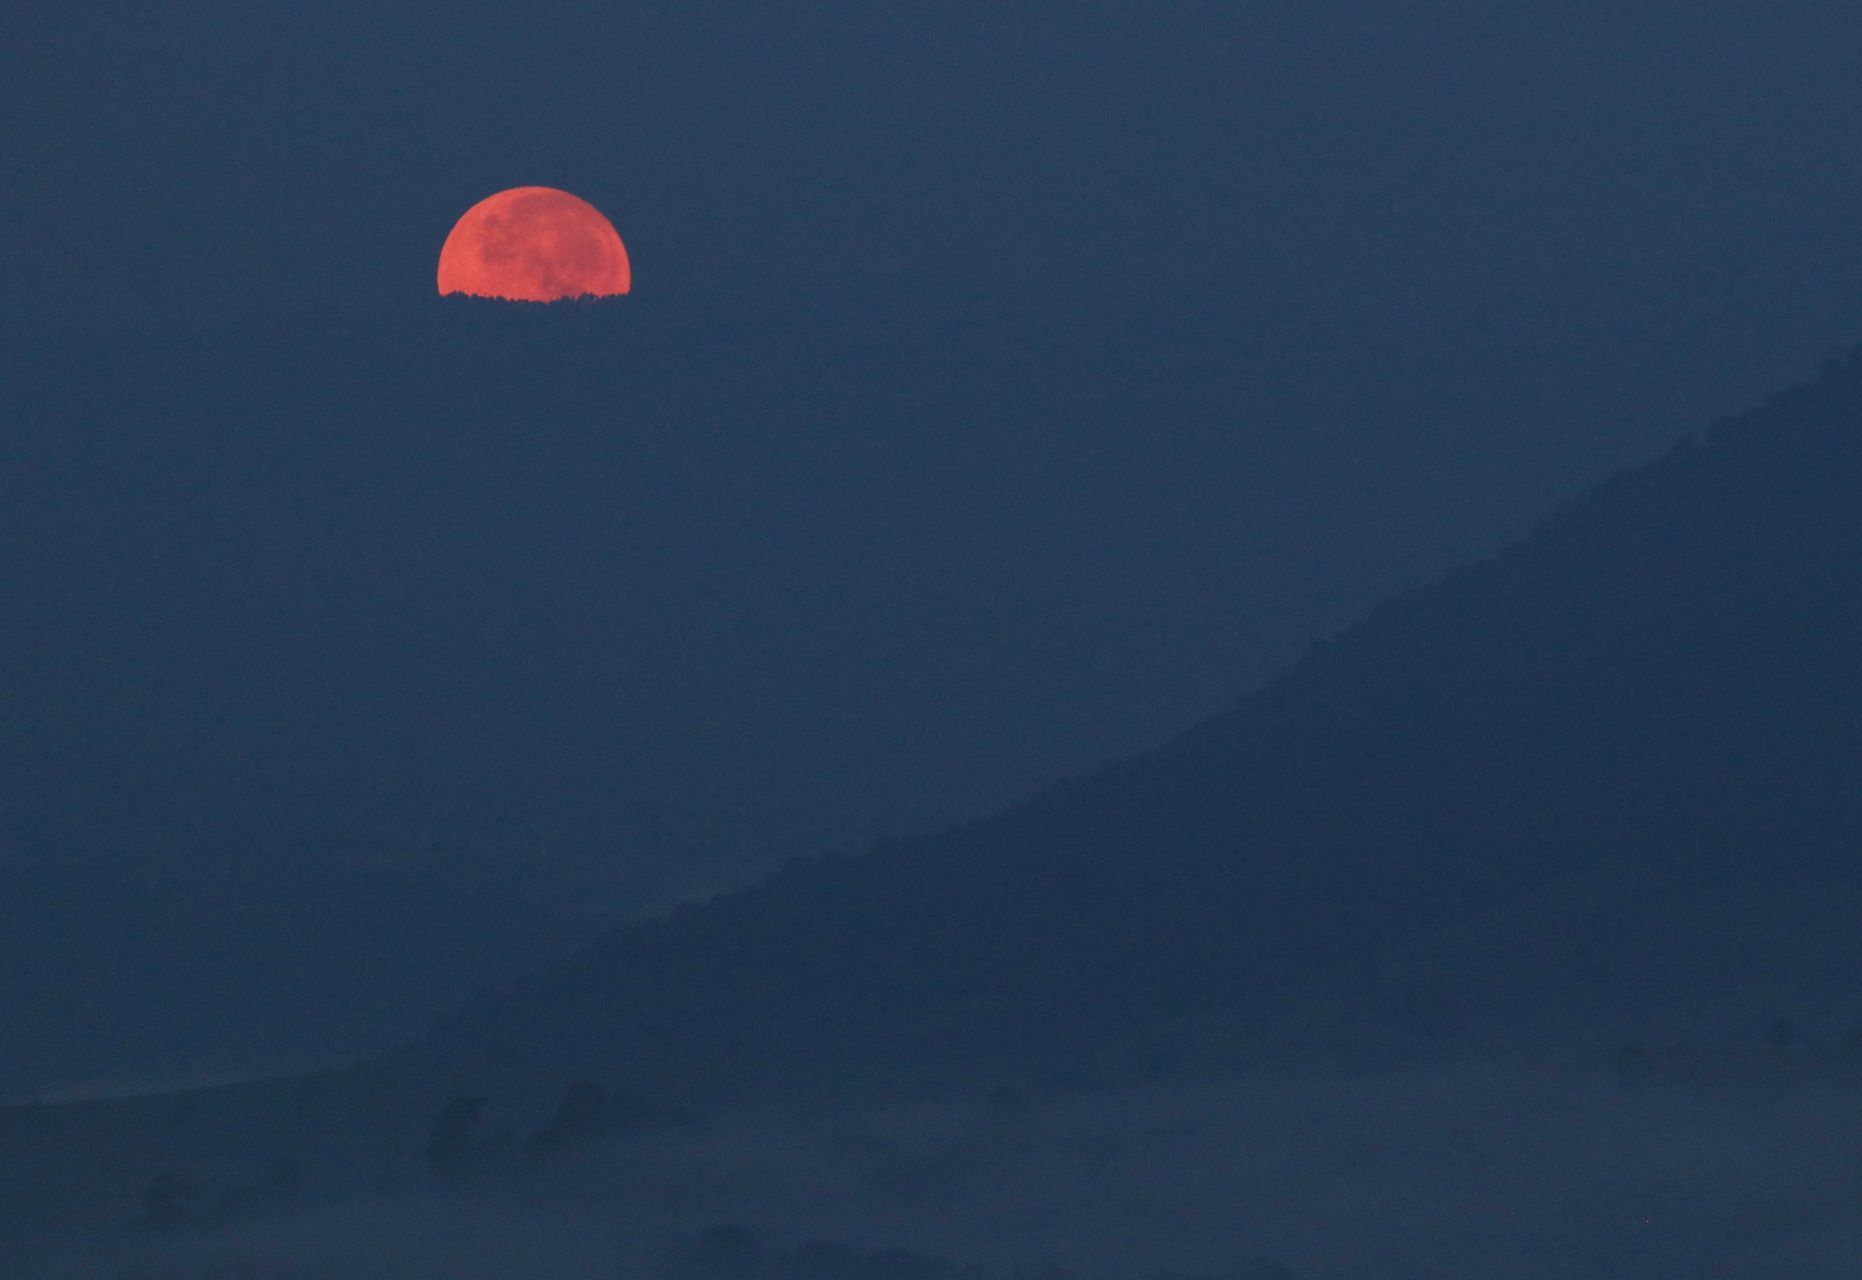 La luna llena adquiere un color naranja en el horizonte durante el amanecer de este día, la imagen tomada en San Pedro Tezontepec.